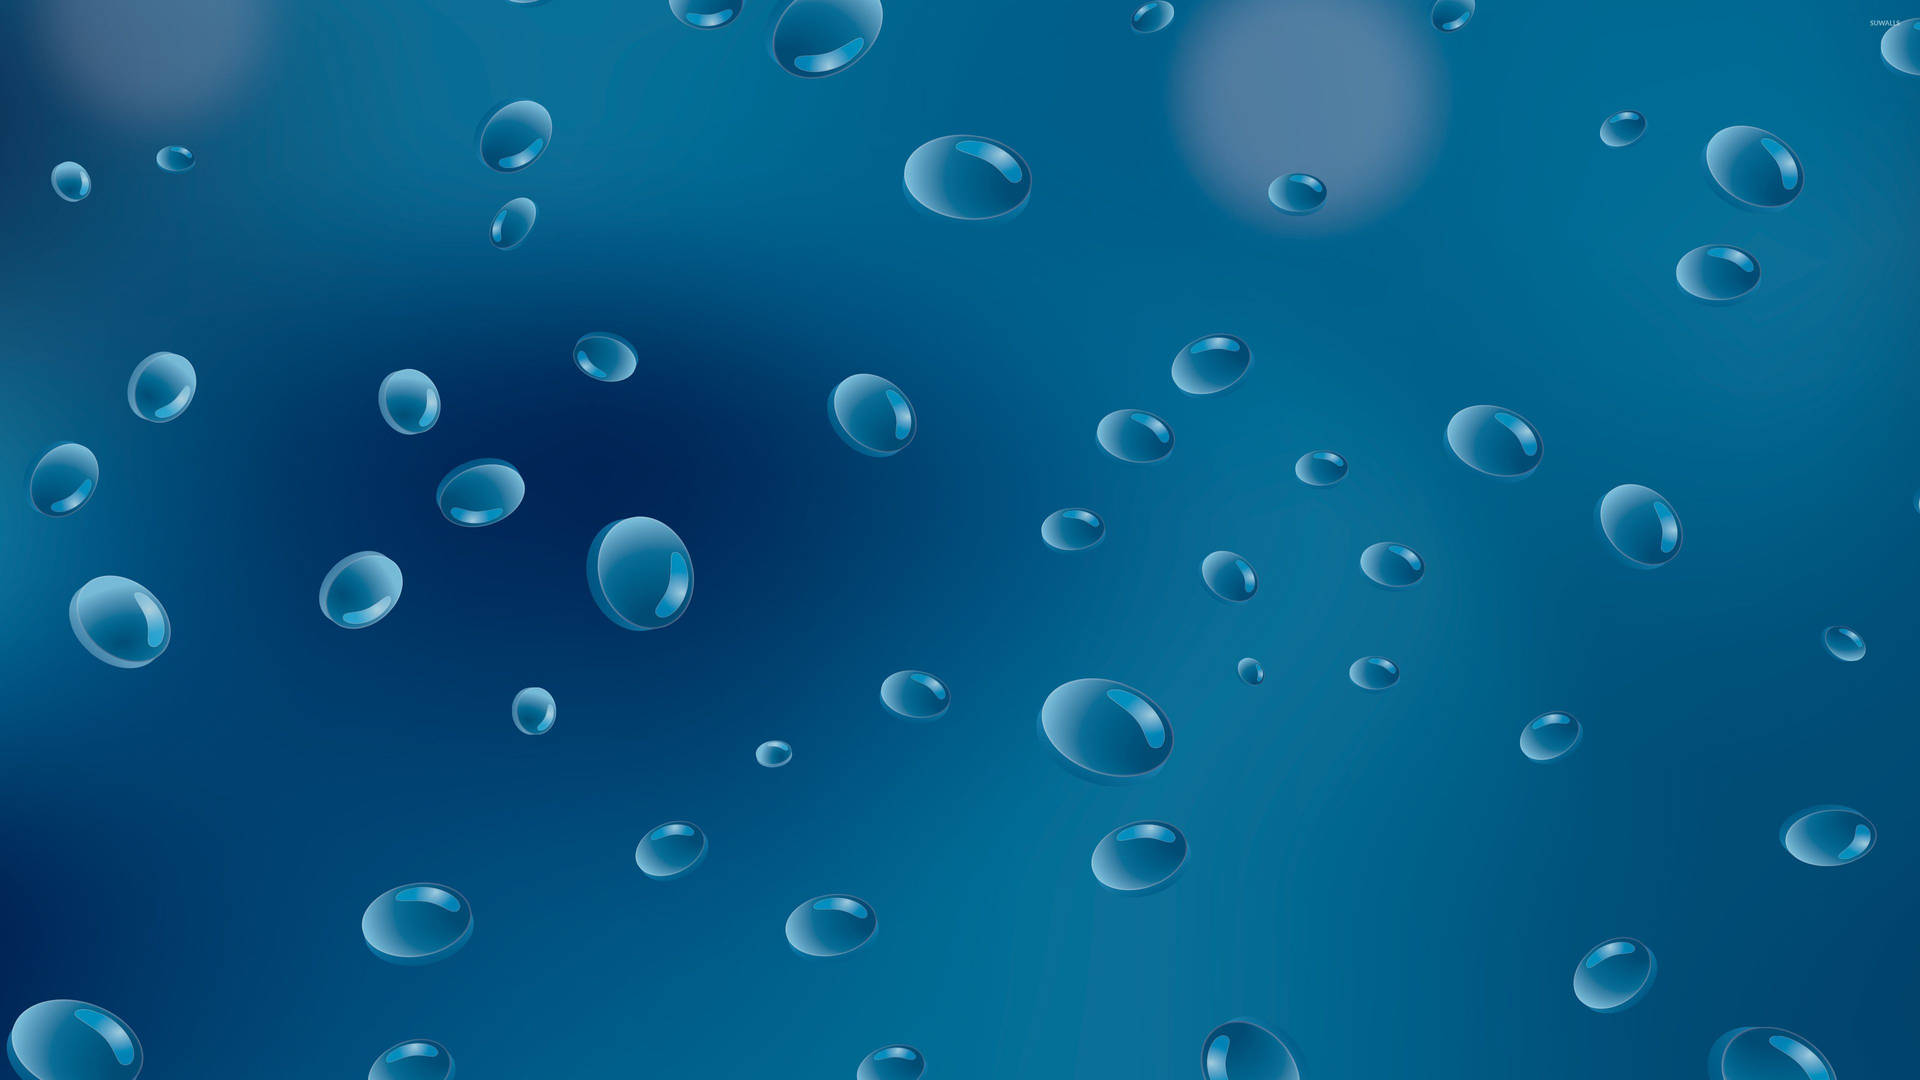 Amazing Blue Raindrops Digital Art Background